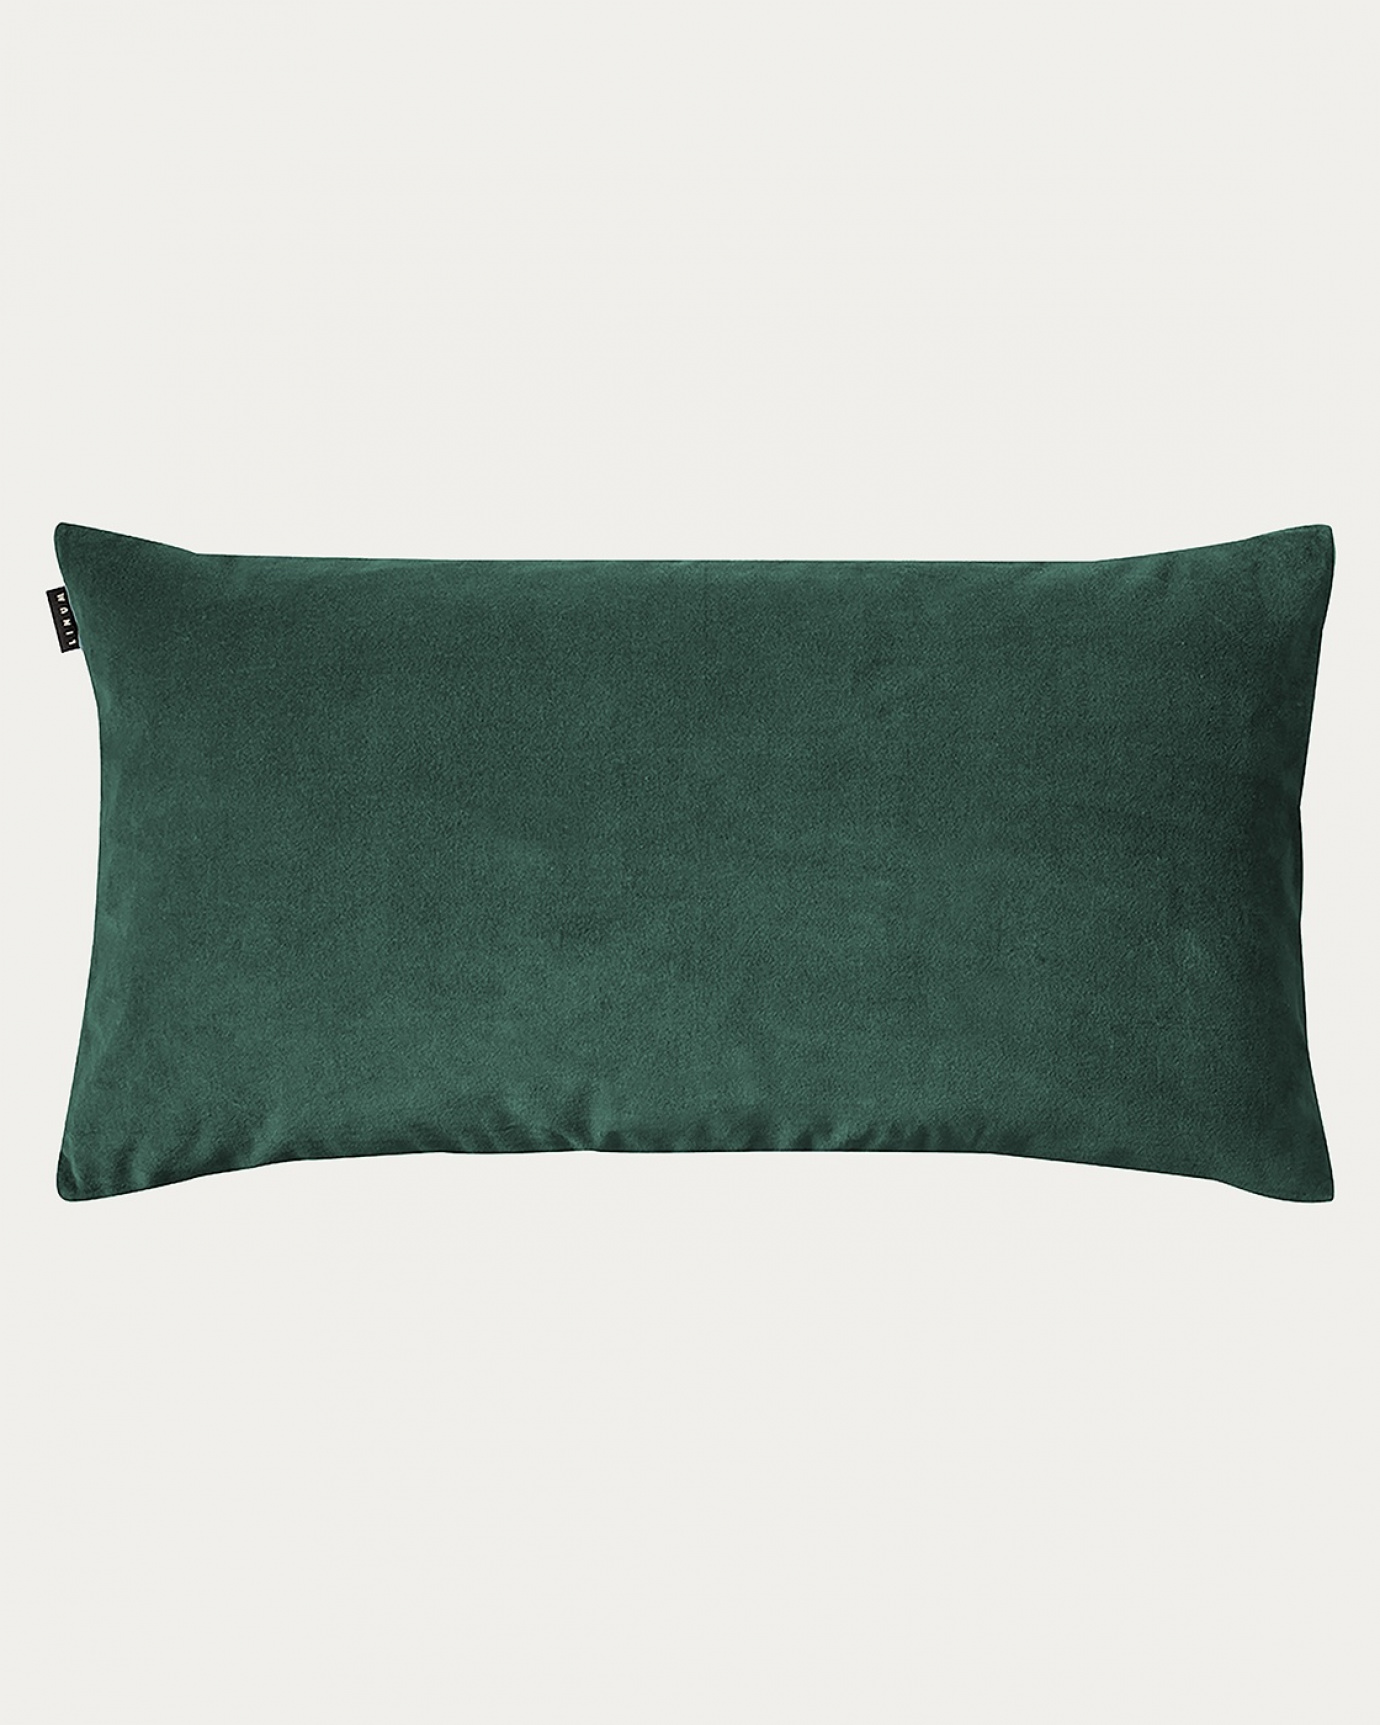 Immagine prodotto verde smeraldo intenso PAOLO copricuscini in morbido velluto di cotone di LINUM DESIGN. Dimensioni 50x90 cm.